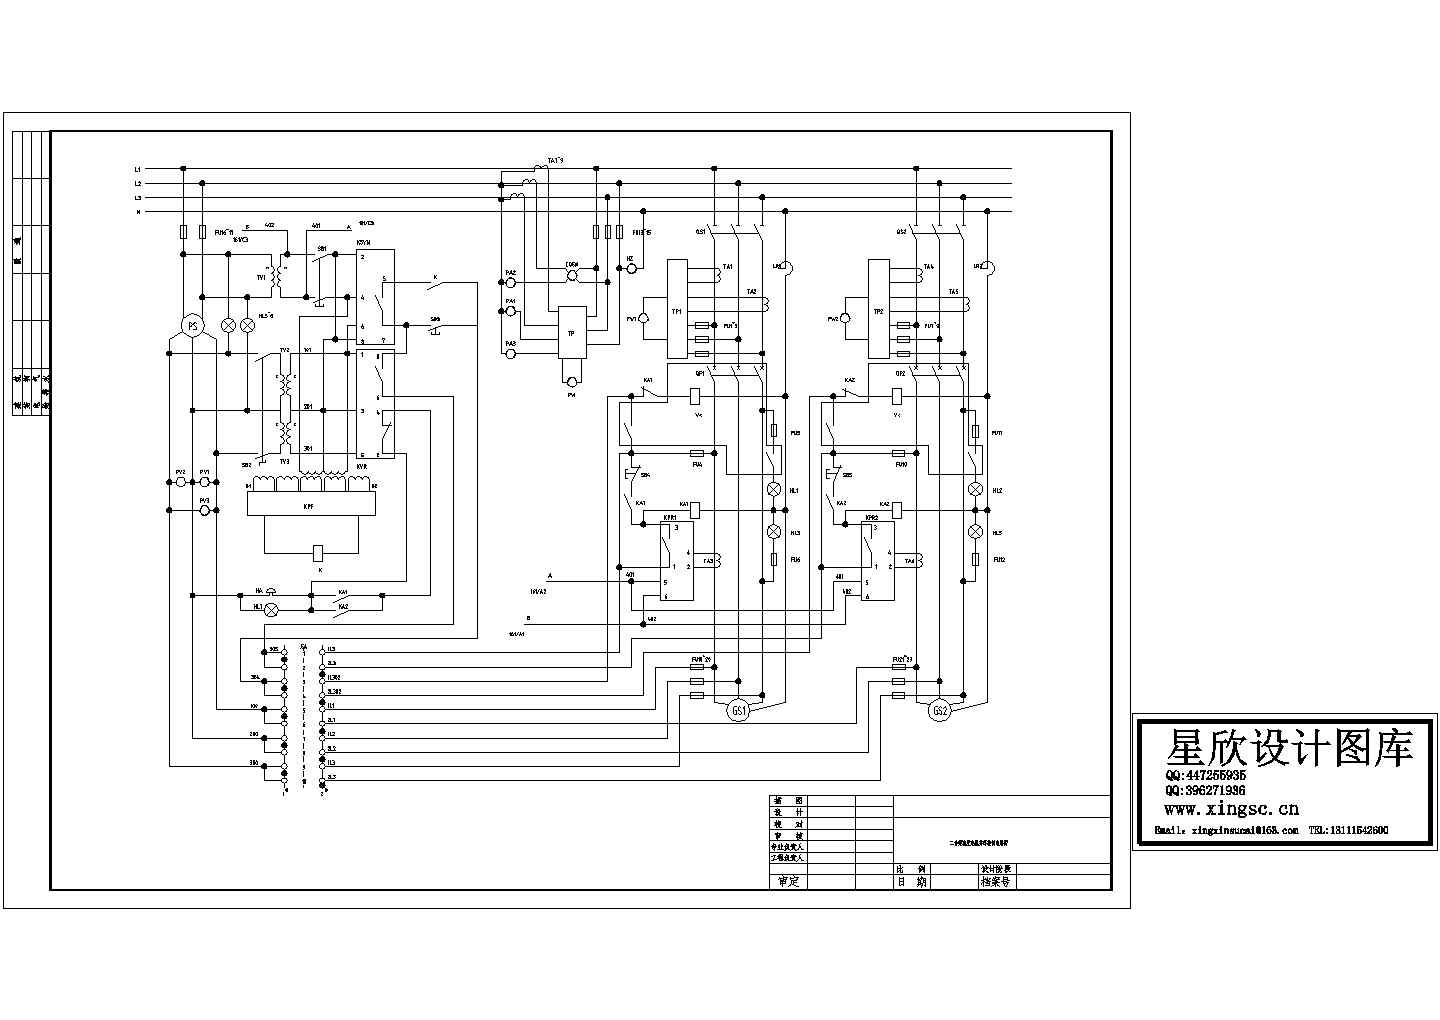 某标准型号二台柴油发电机并车电气控制原理设计CAD图纸